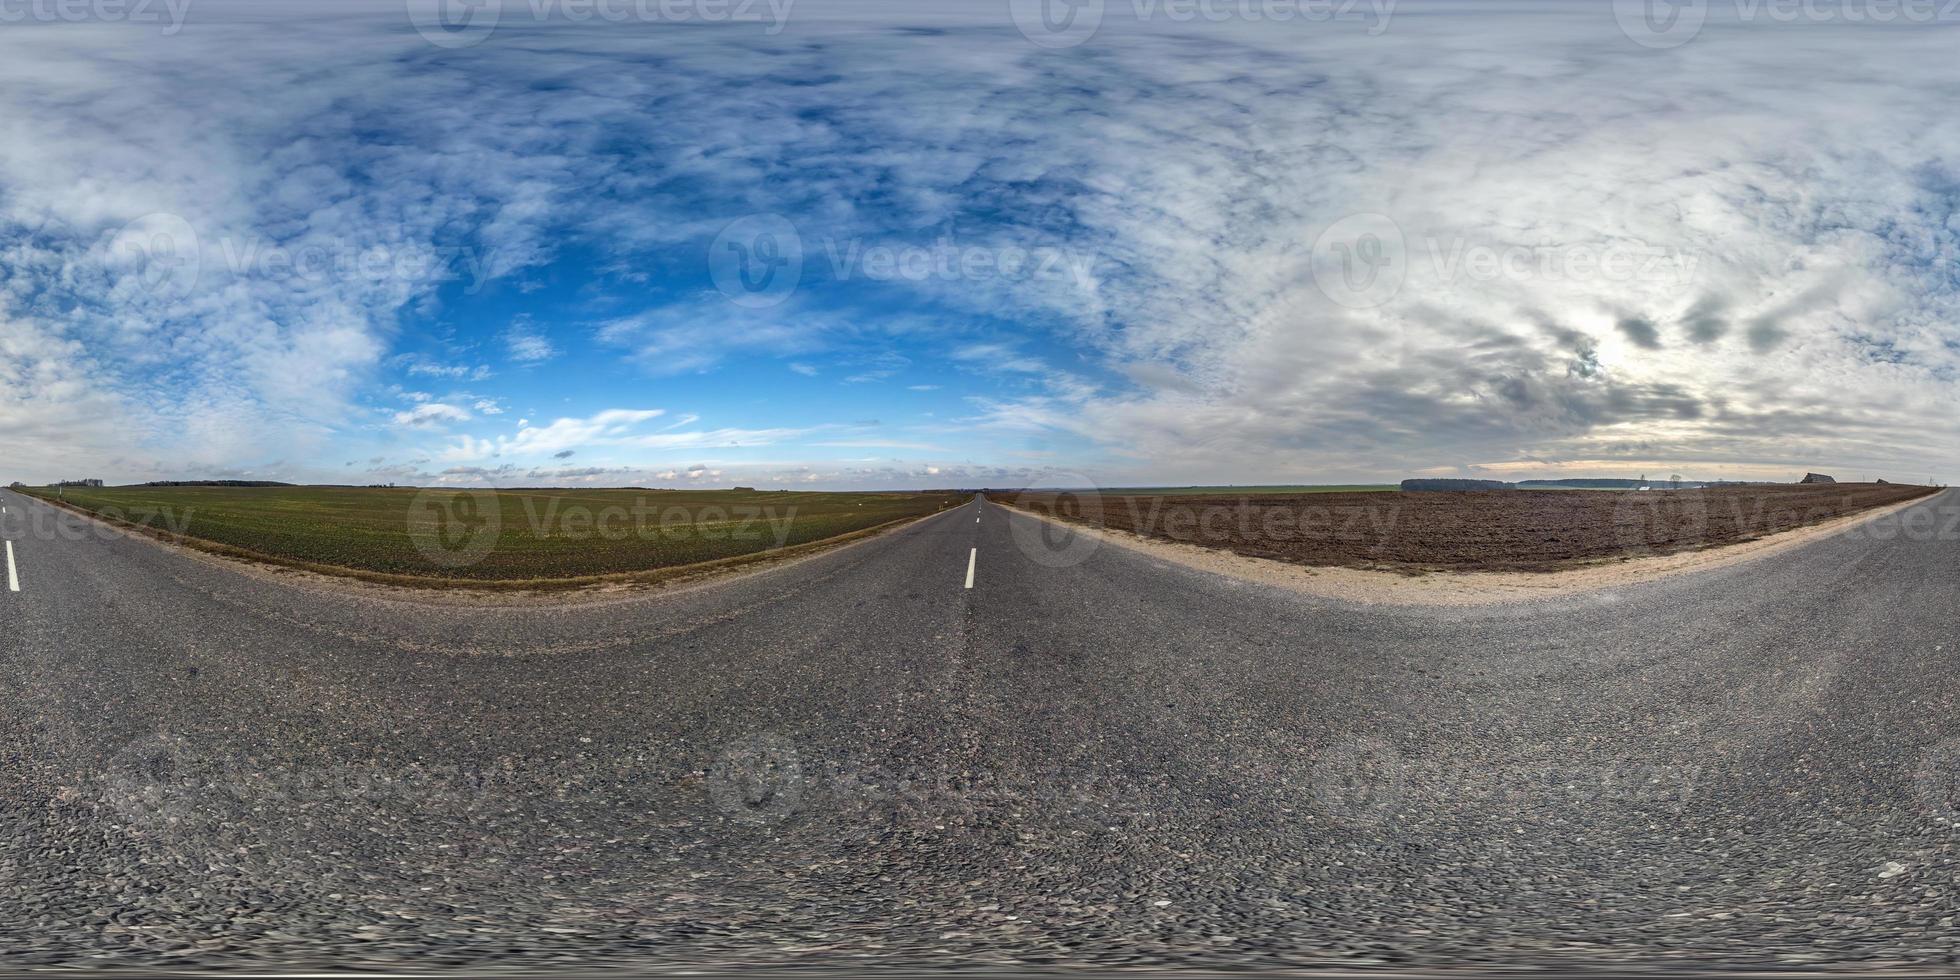 volles kugelförmiges nahtloses Panorama 360-Grad-Winkelansicht auf verkehrsfreier Asphaltstraße zwischen Feldern an sonnigen Tagen mit bewölktem Himmel. 360-Grad-Panorama in äquirektangularer Projektion, VR-Inhalt foto